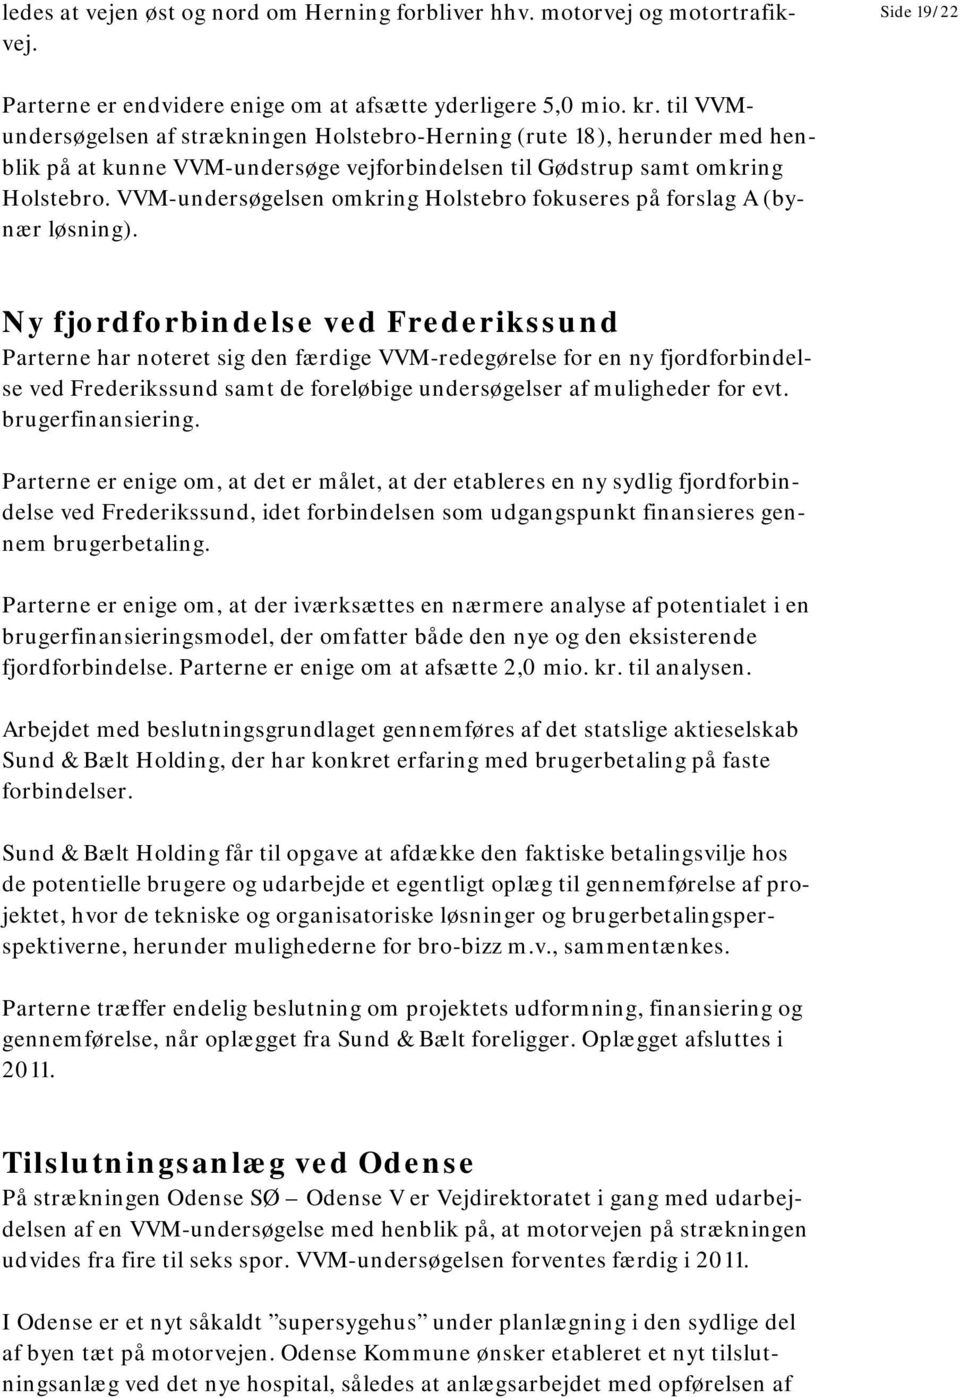 VVM-undersøgelsen omkring Holstebro fokuseres på forslag A (bynær løsning).